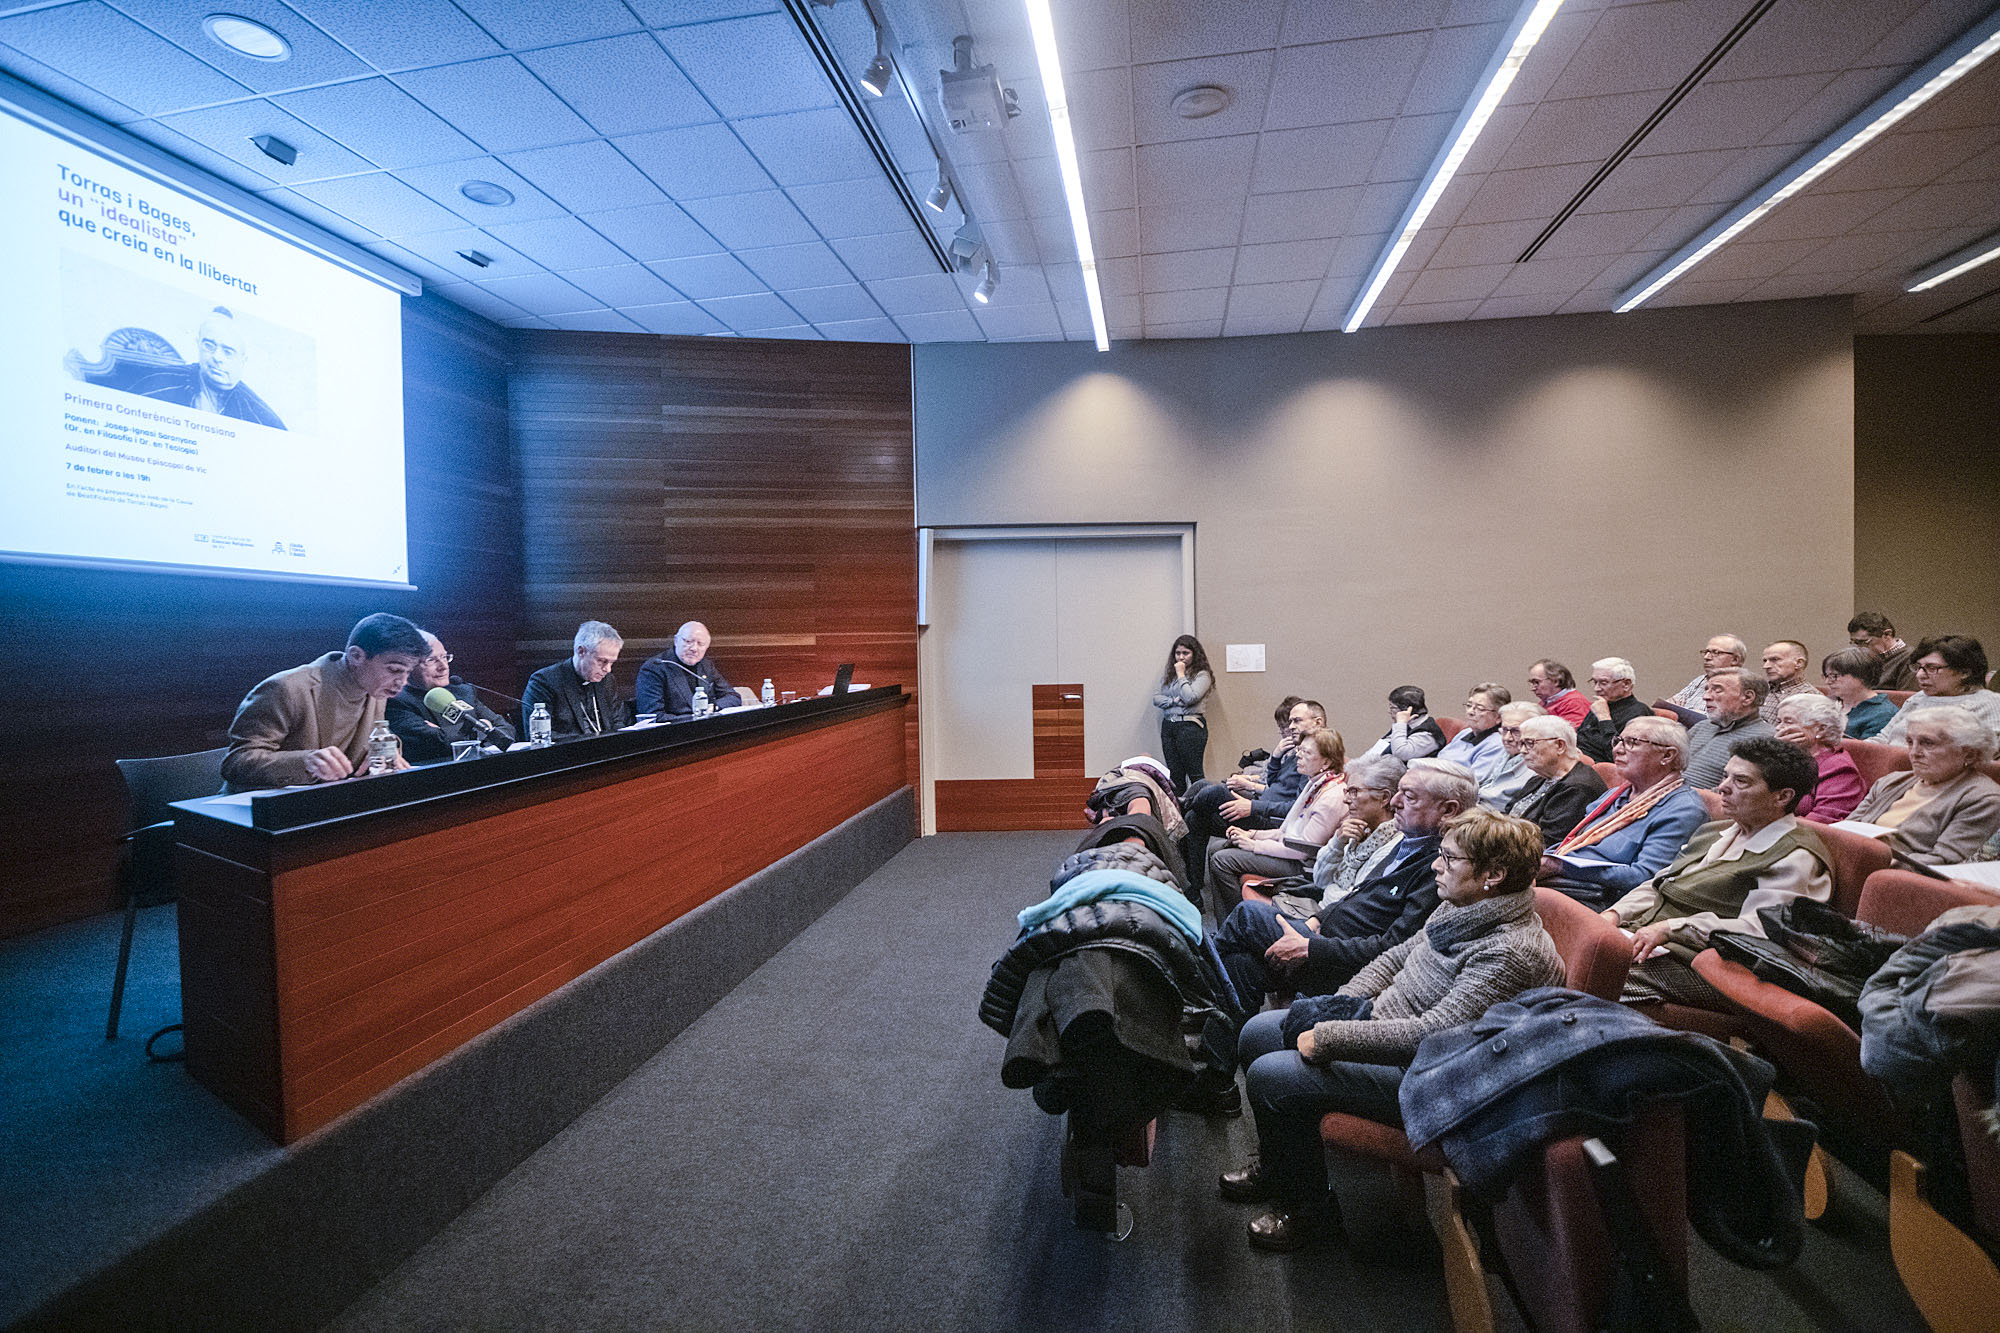 La presentació del web sobre Torras i Bages, a la sala d’actes del MEV. En primer terme, a la taula, Abel Miró